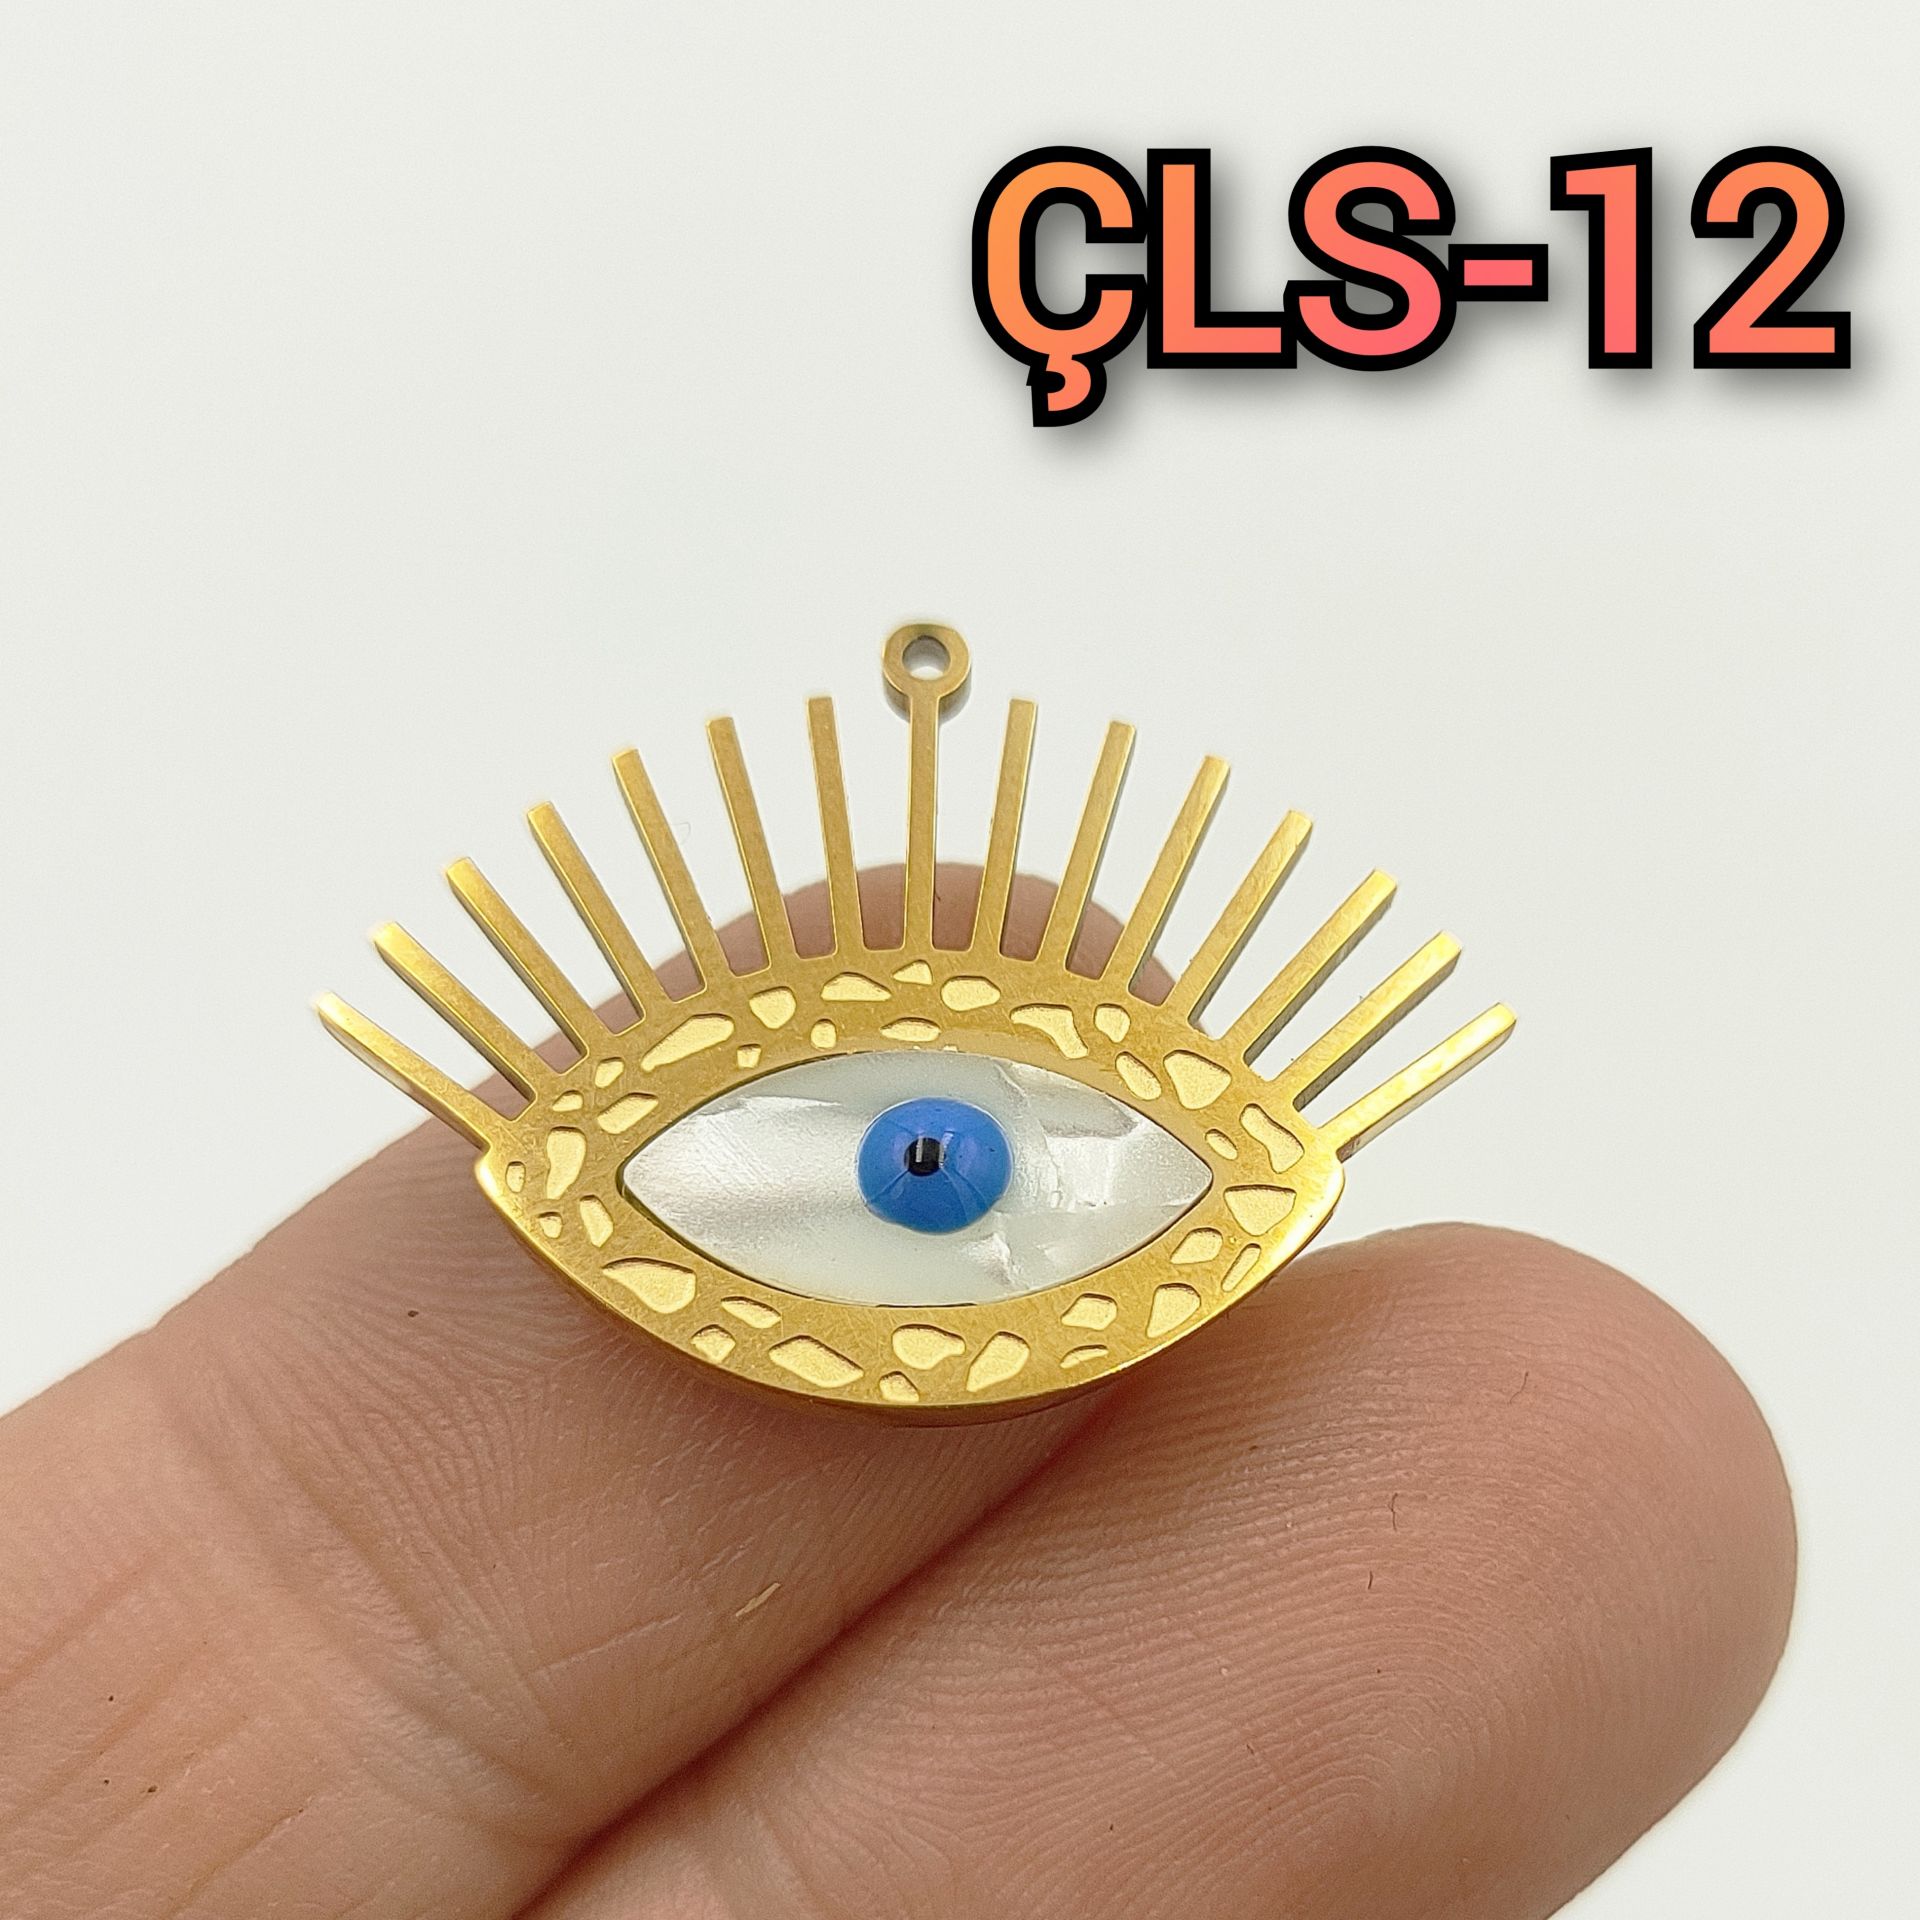 ÇLS-12 Altın Renk 316L Cerrahi Çelik Sedefli Göz Sallantı - Kolye Ucu